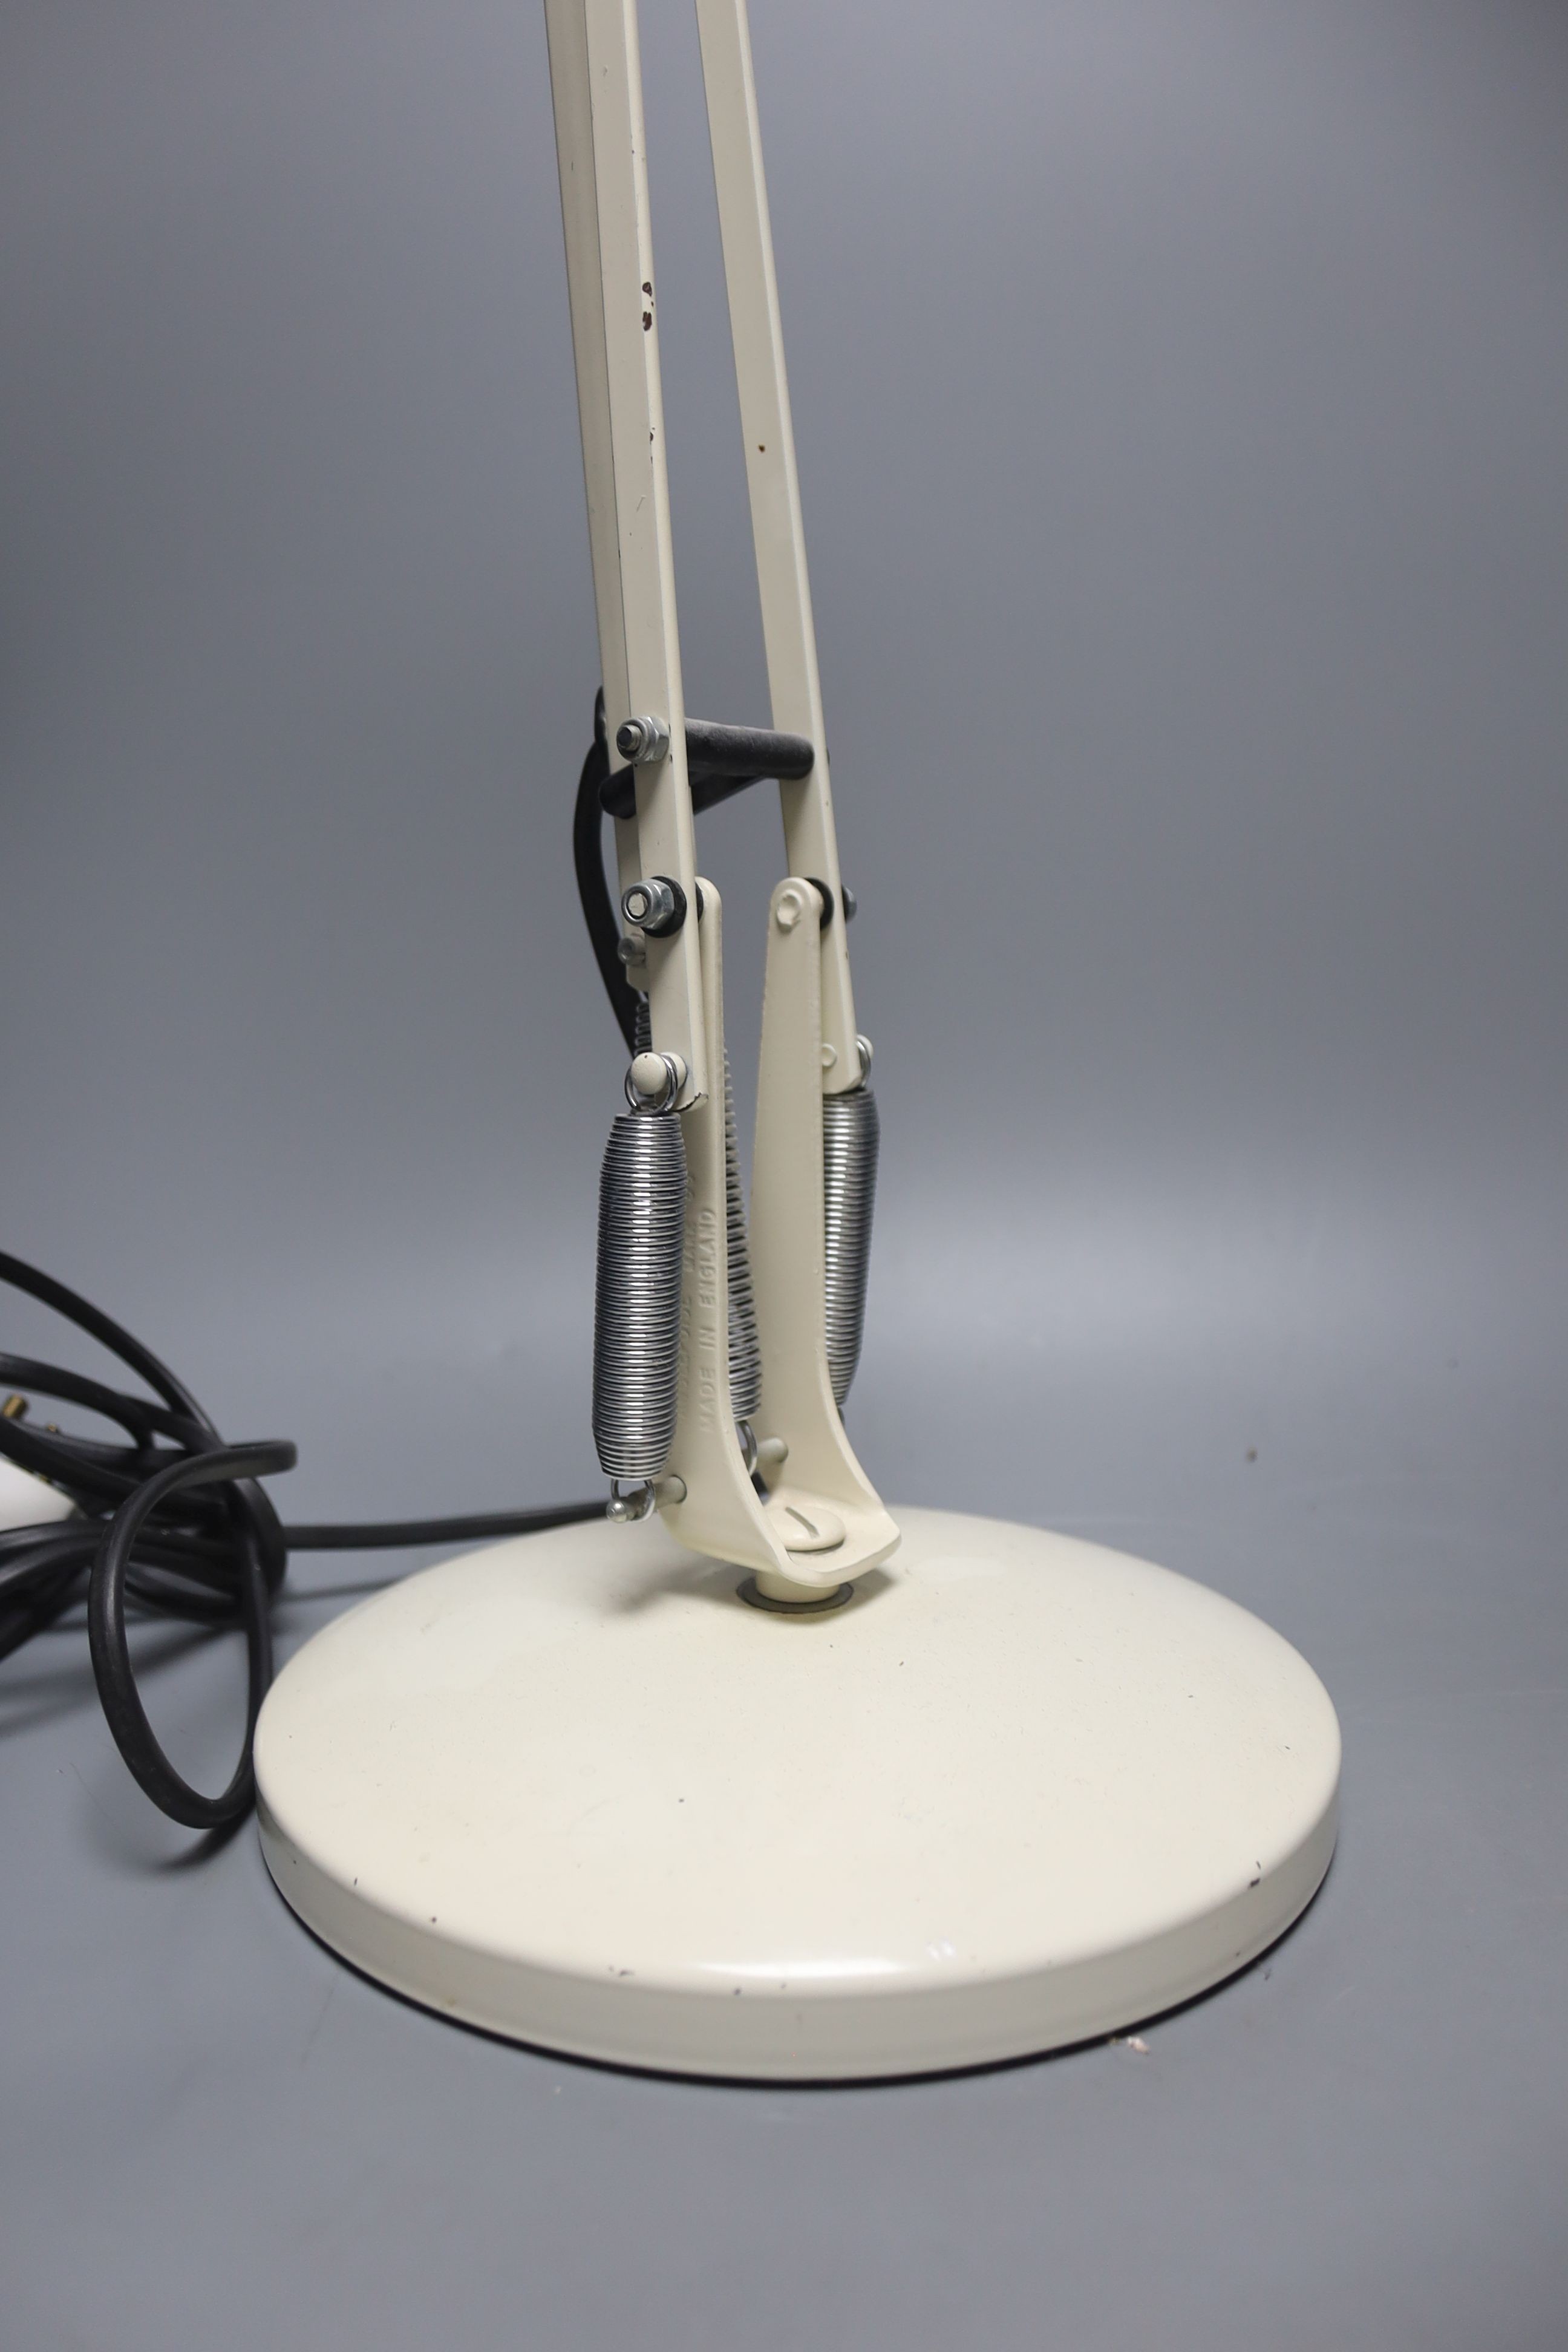 A cream anglepoise lamp, 83 cms high.